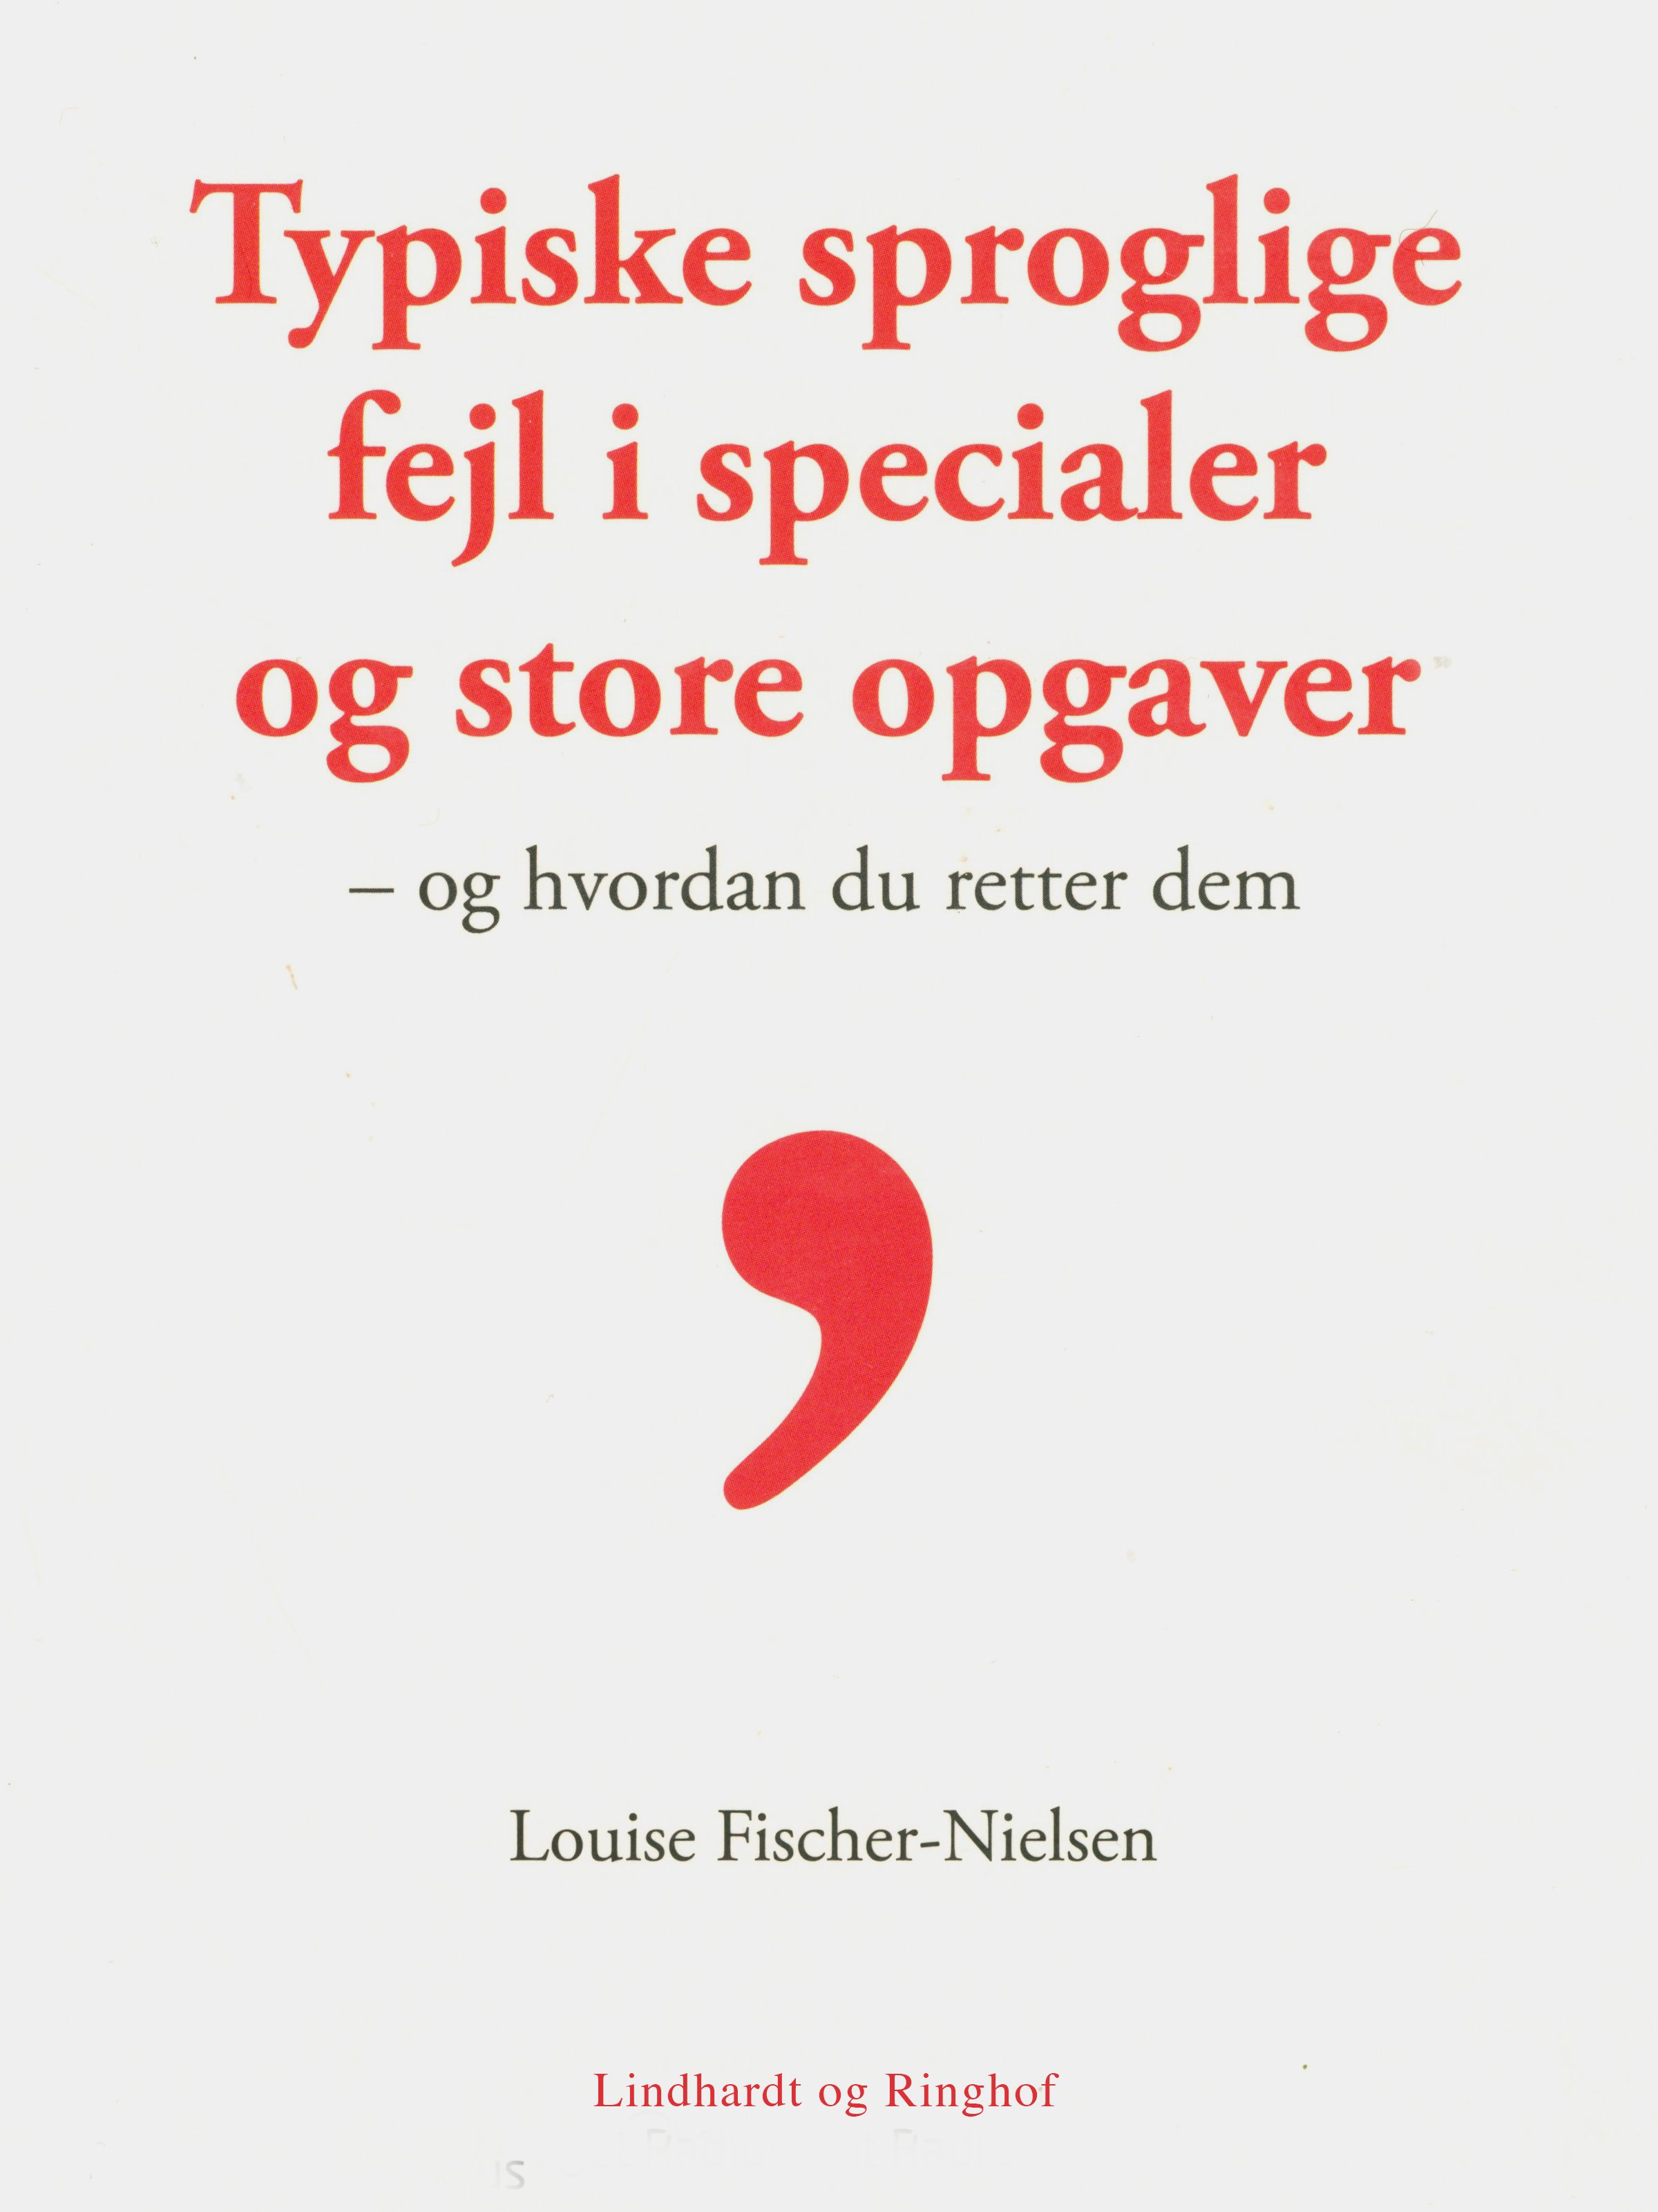 Typiske sproglige fejl, e-bog af Louise Fischer Nielsen